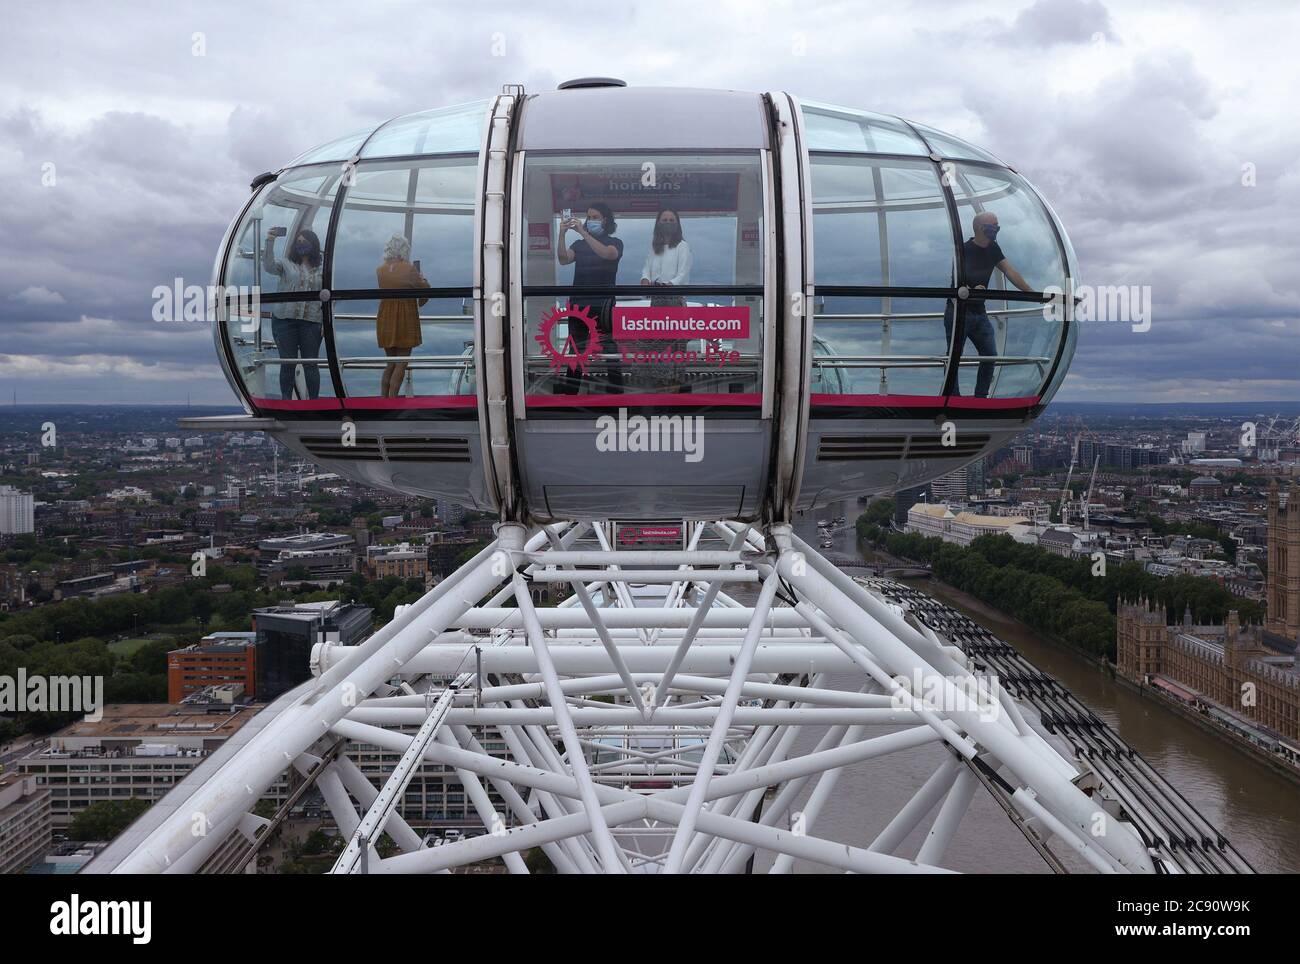 Le London Eye lastminute.com, célèbre dans le monde entier, sera de nouveau  ouvert aux visiteurs à partir du 1er août. Conformément aux directives du  gouvernement, l'attraction a mis en place des mesures